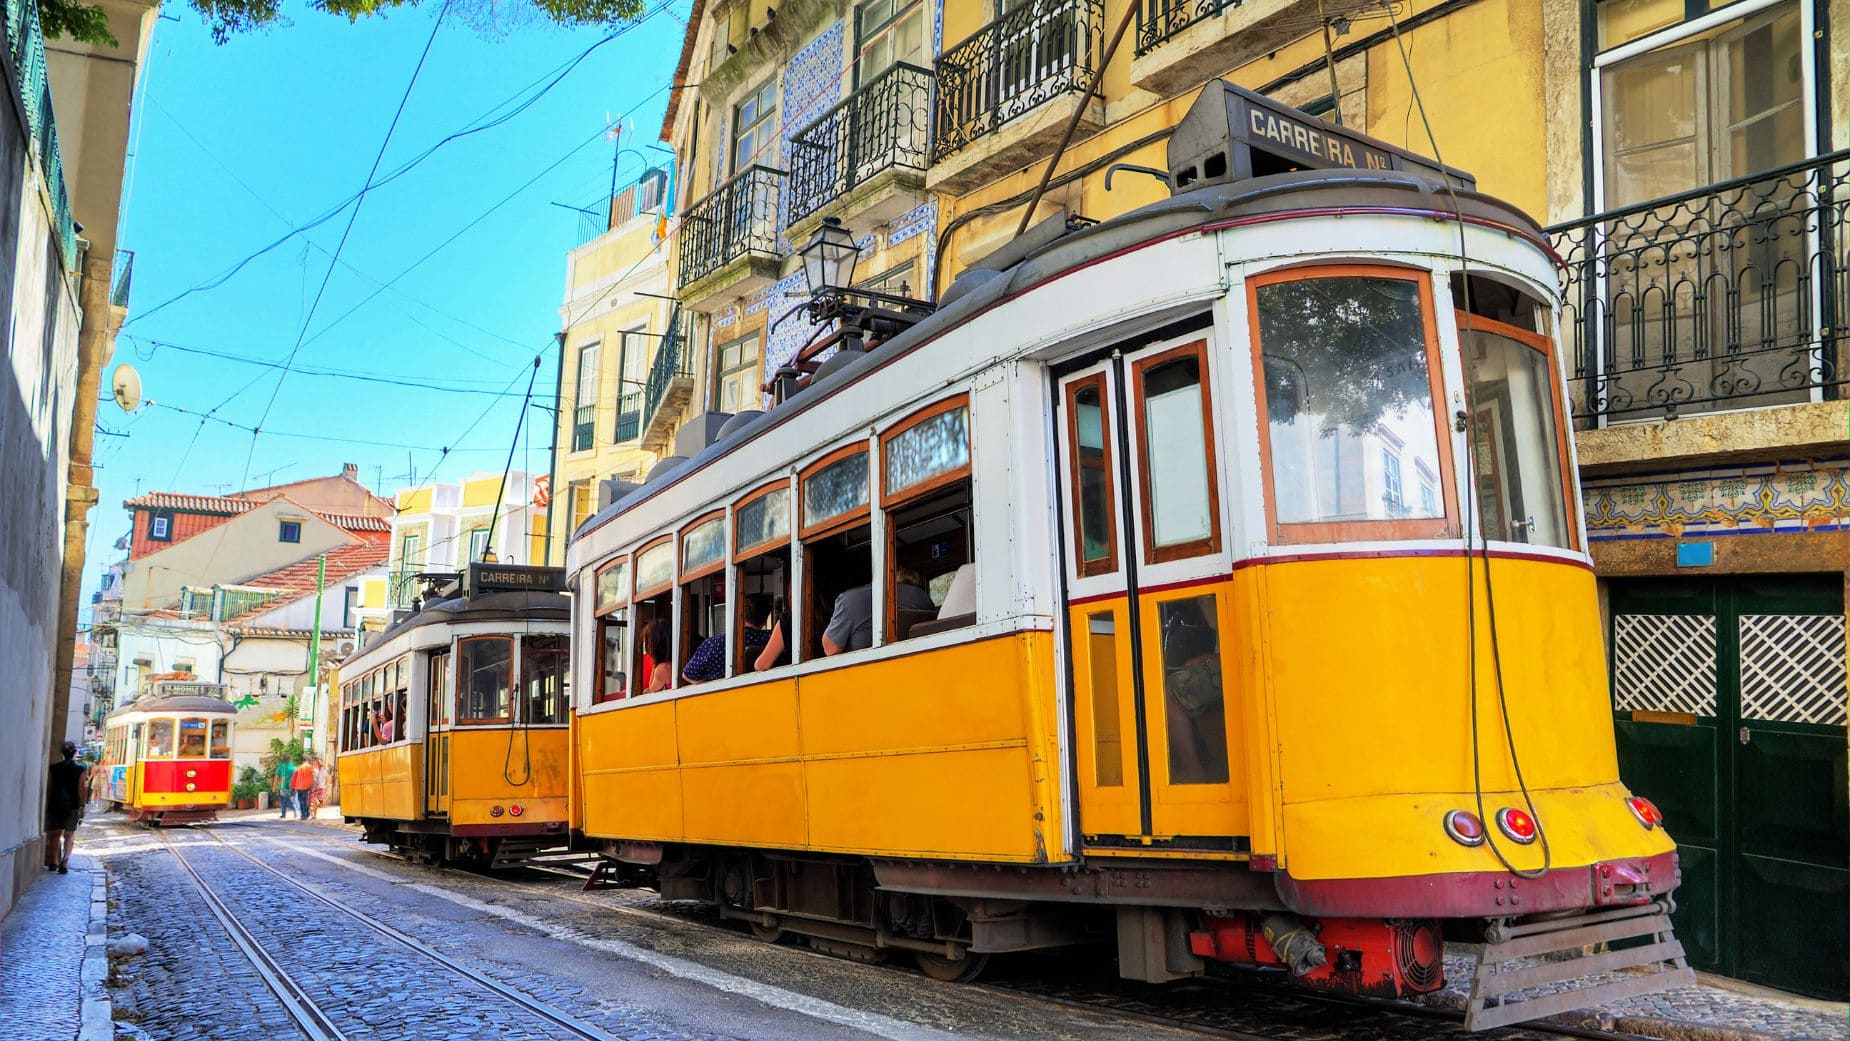 Viajes El Corte Ingles lanza una oferta para conocer Lisboa a precio reducido como los viajes del IMSERSO